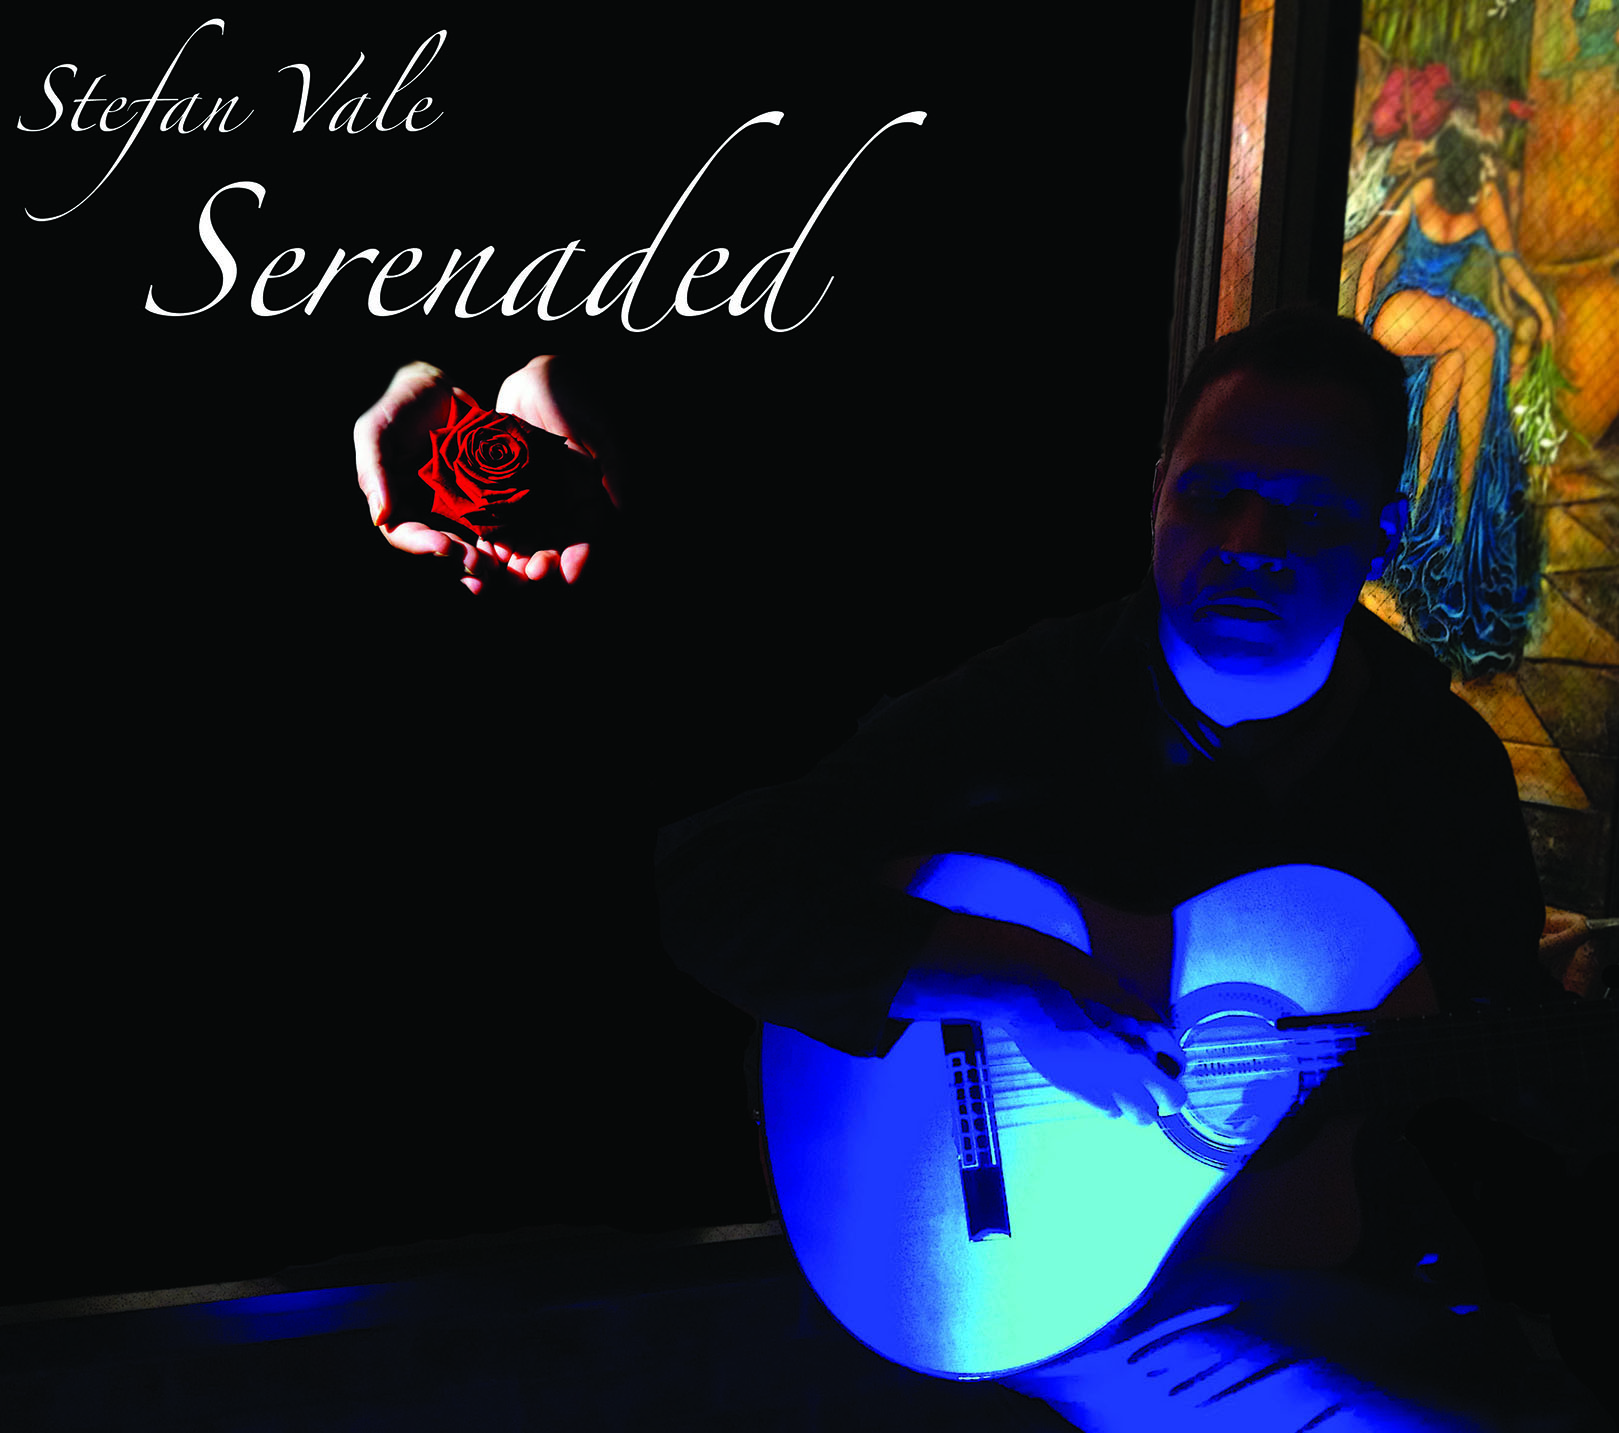 Stefan Vale - Serenaded